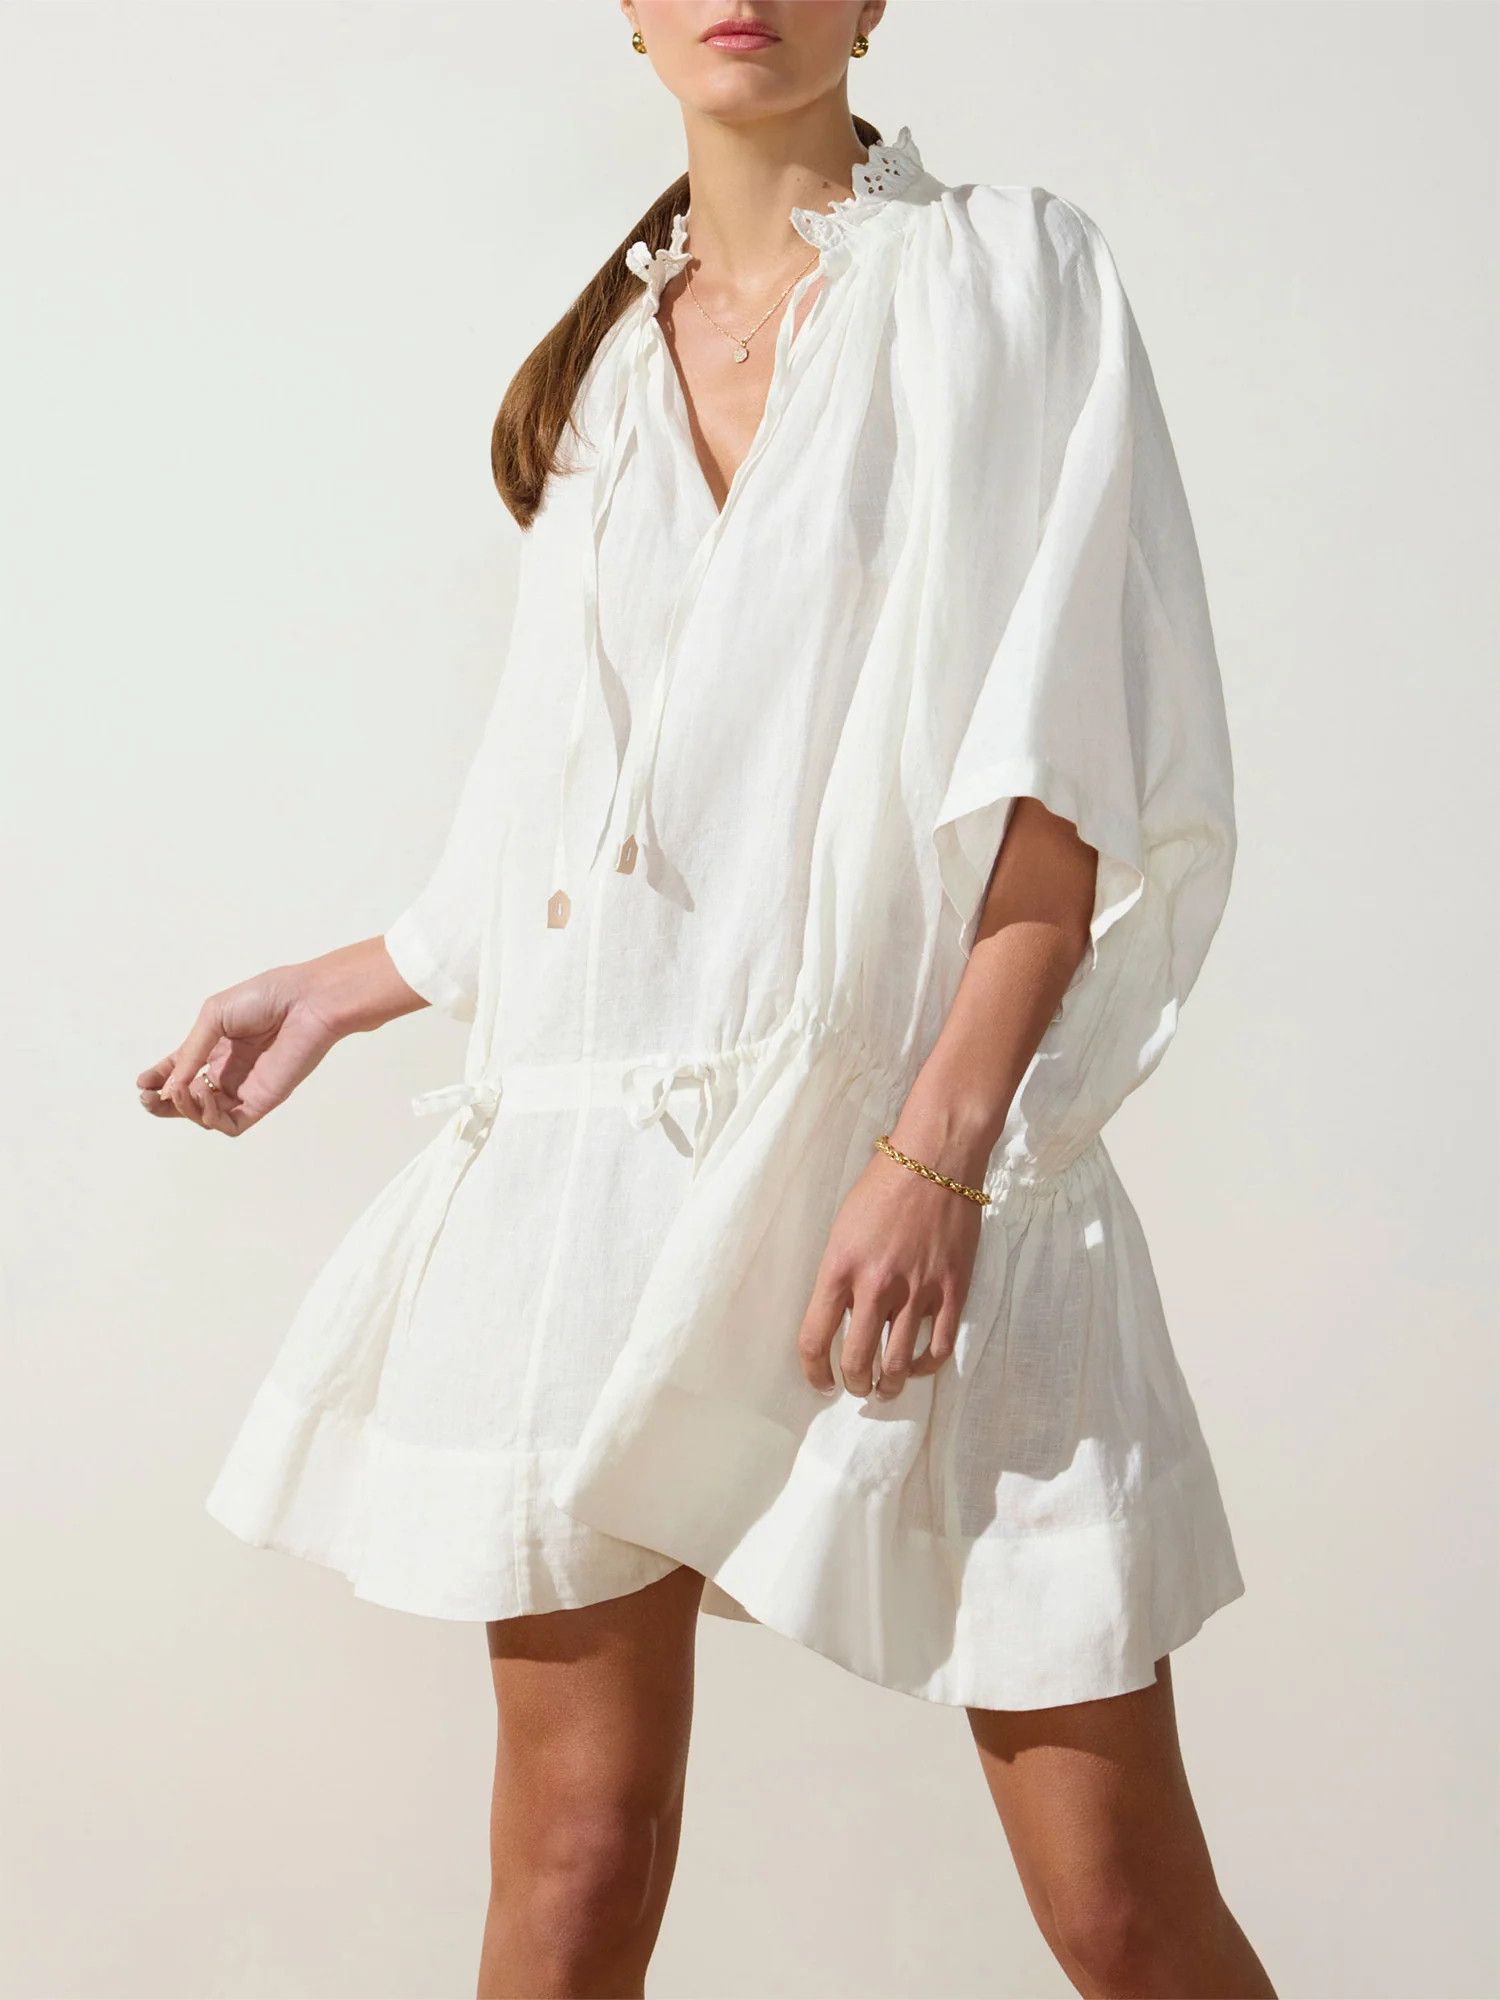 Brochu Walker | Women's St. Tropez Dress in Ivory | Brochu Walker